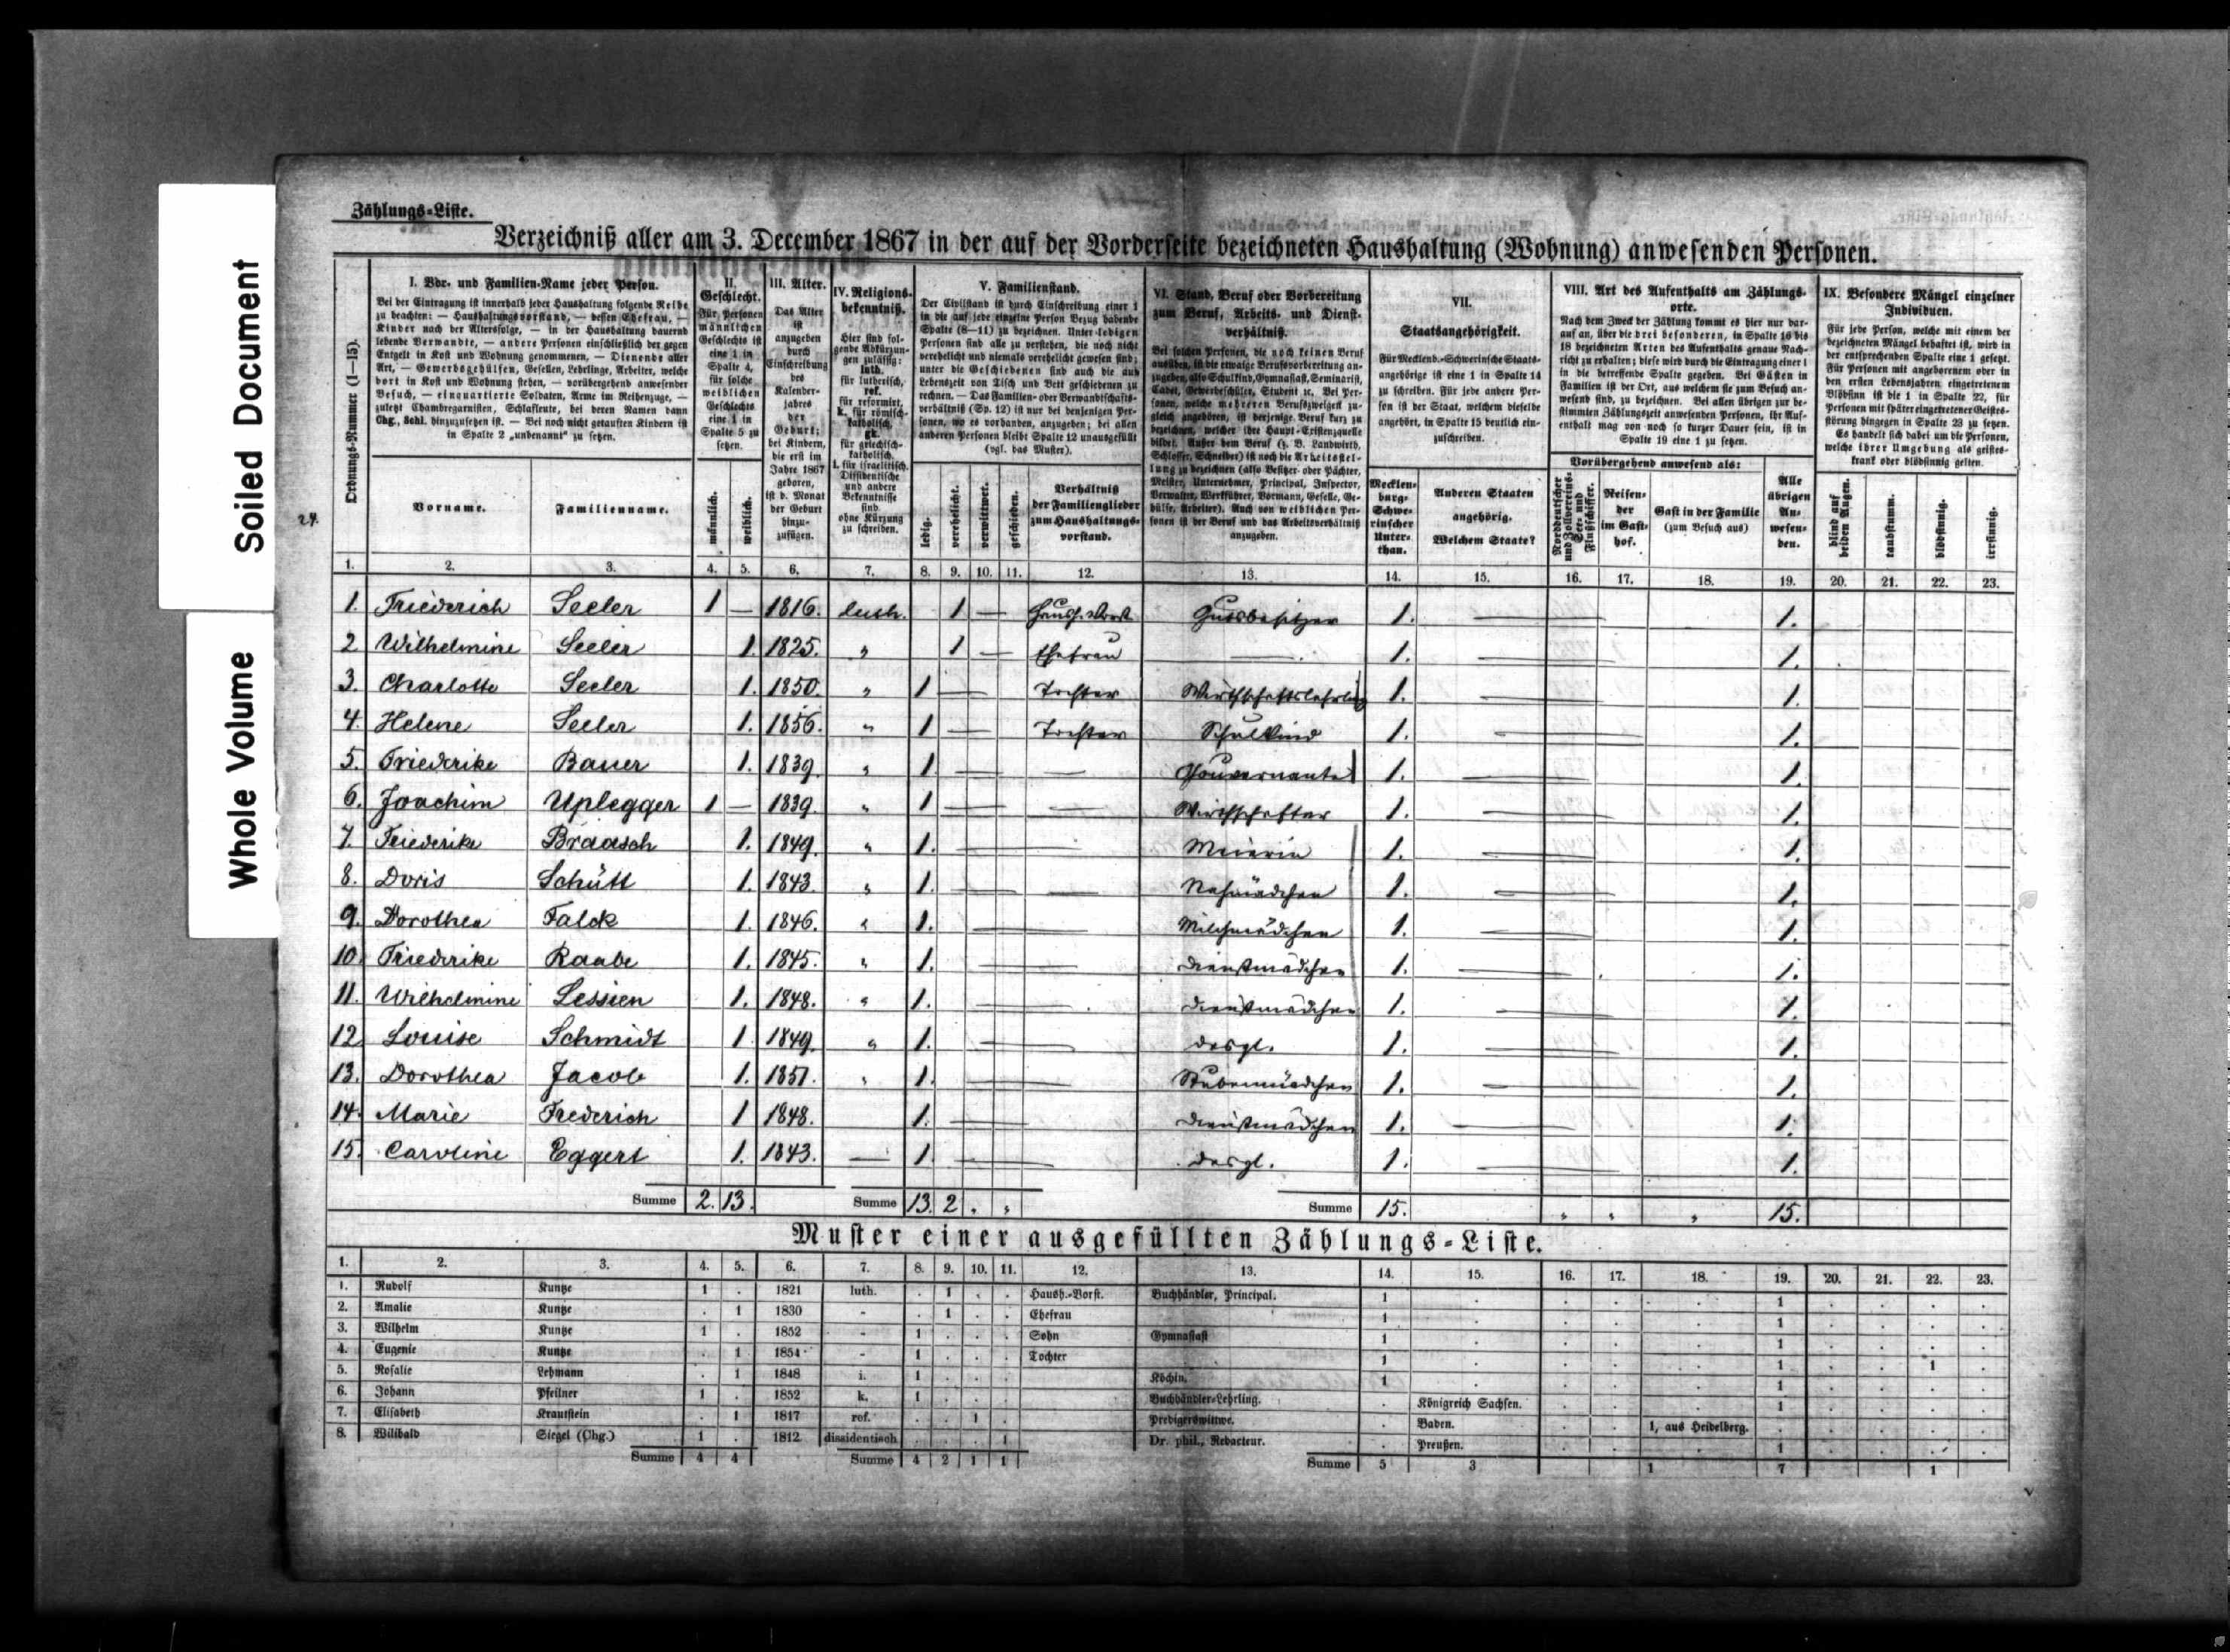 Mecklenburg-Schwerin, Germany, Census, 1867